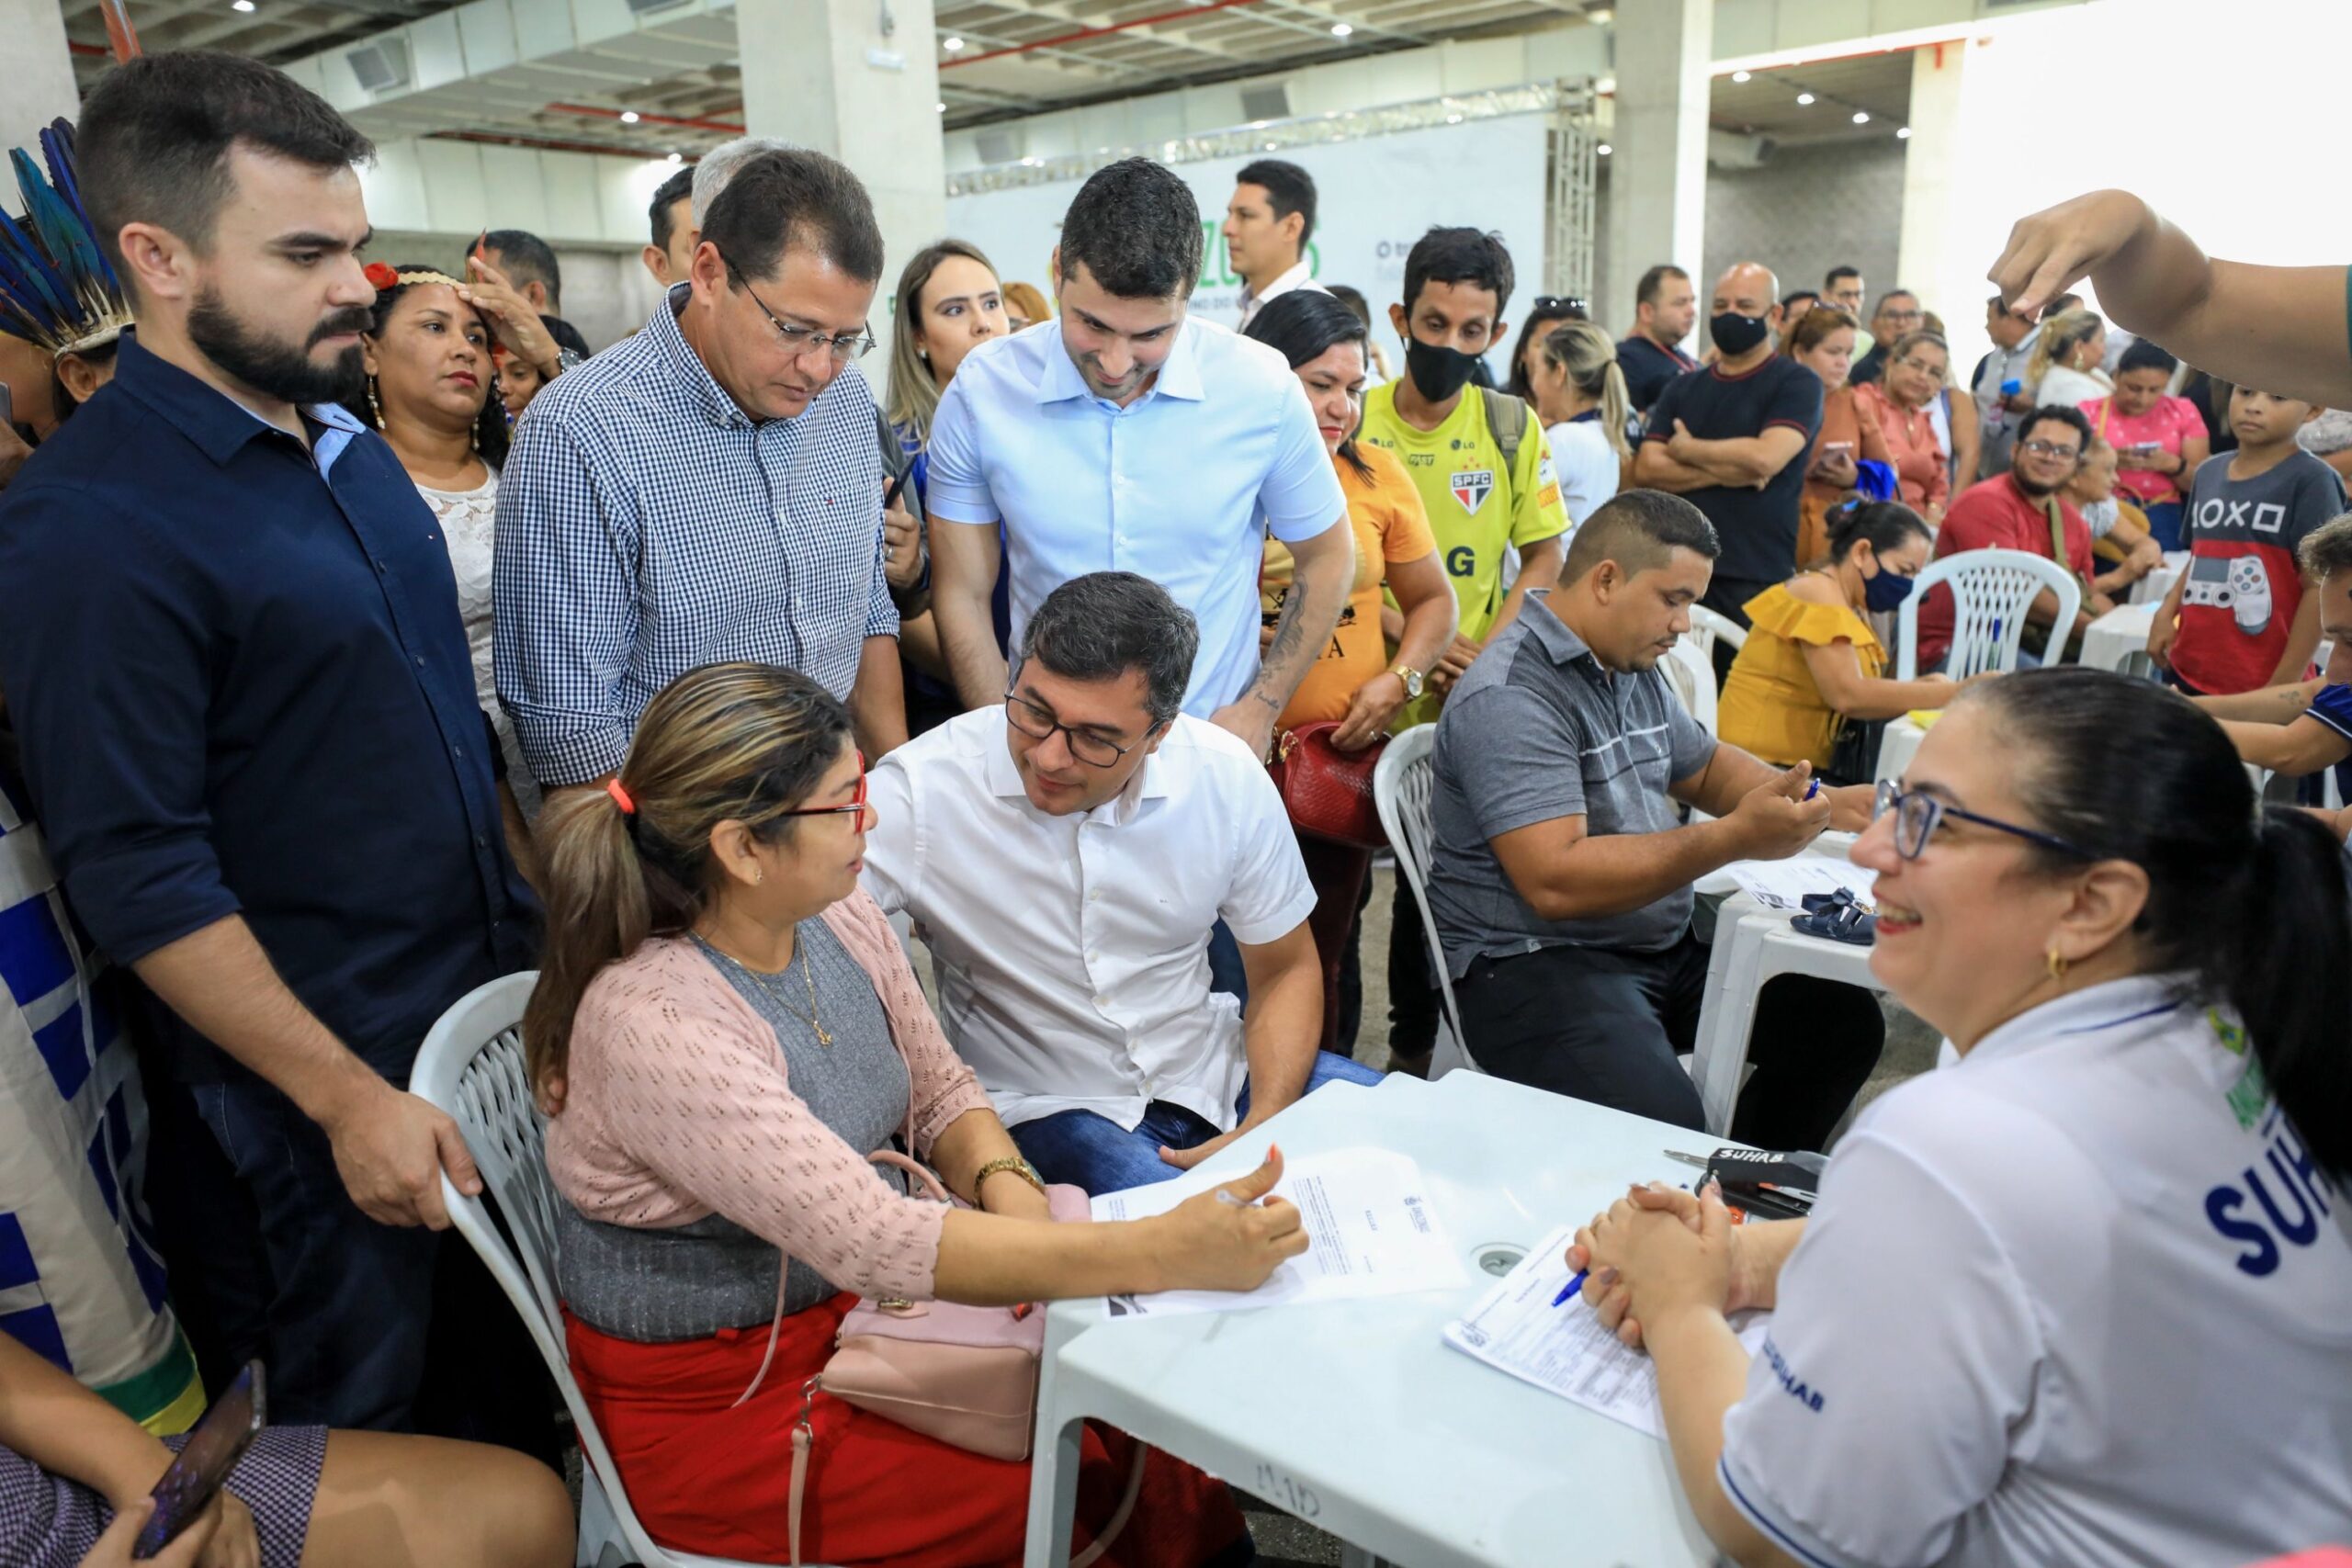 Wilson Lima libera pagamento de indenização para mais 98 famílias das comunidades da Sharp e Manaus 2000